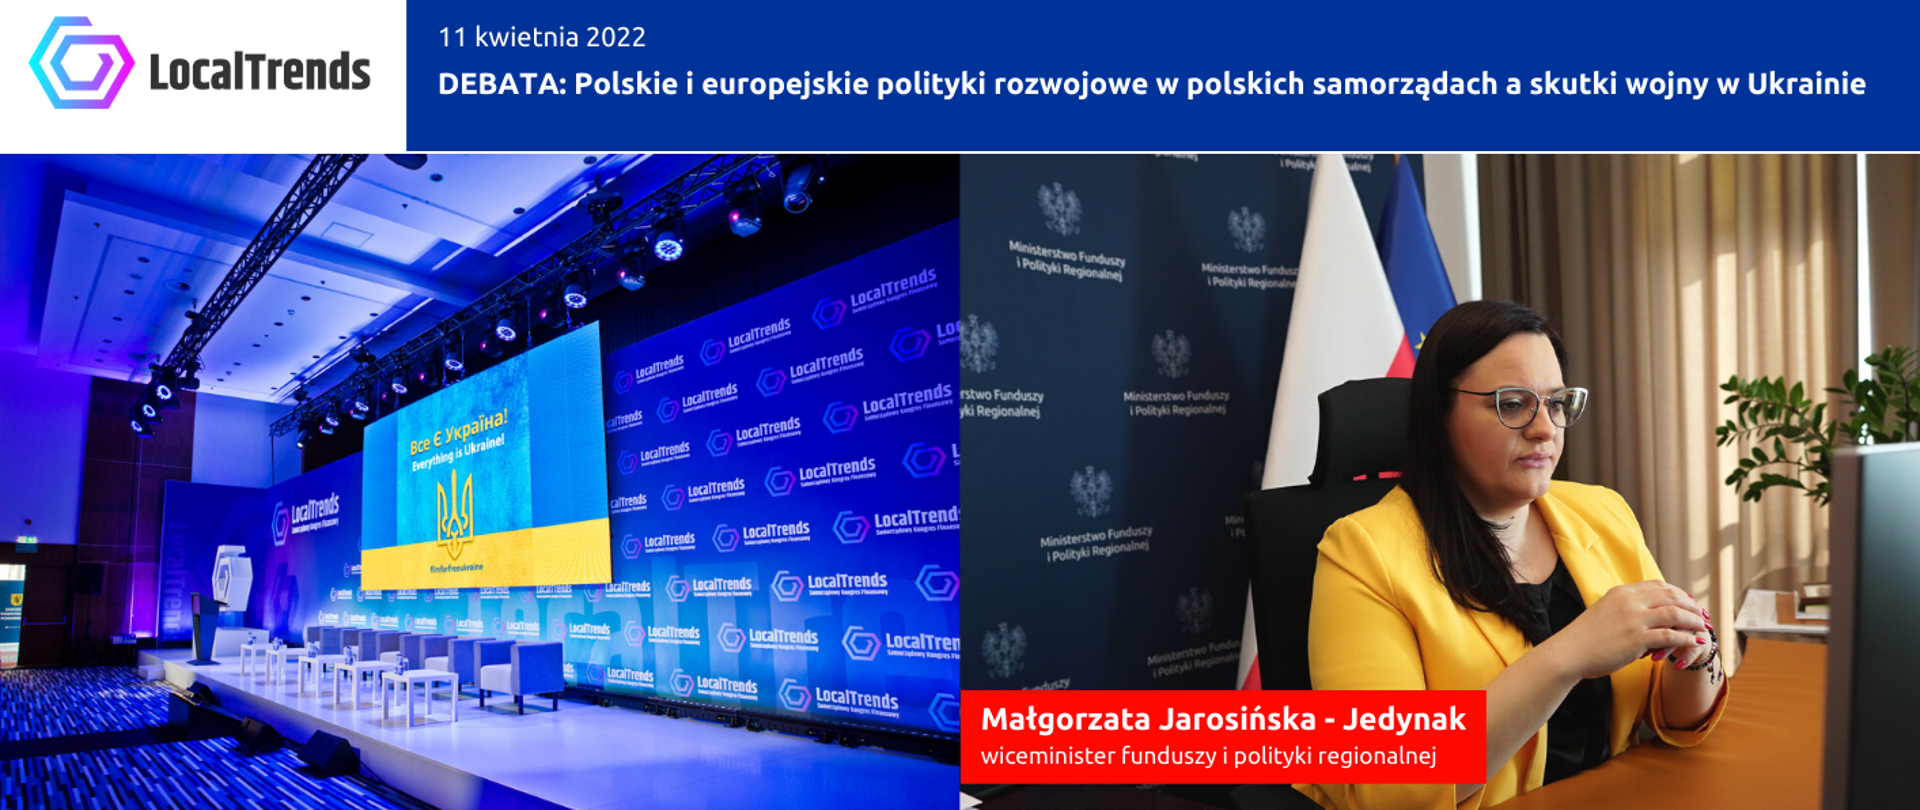 Na grafice napis Debata Polskie i europejskie polityki rozwojowe w polskich samorządach. Po prawej zdjęcie wiceminister Małgorzaty Jarosińskiej-Jedynak przed monitorem, a z lewej zdjęcie sali konferencyjnej.